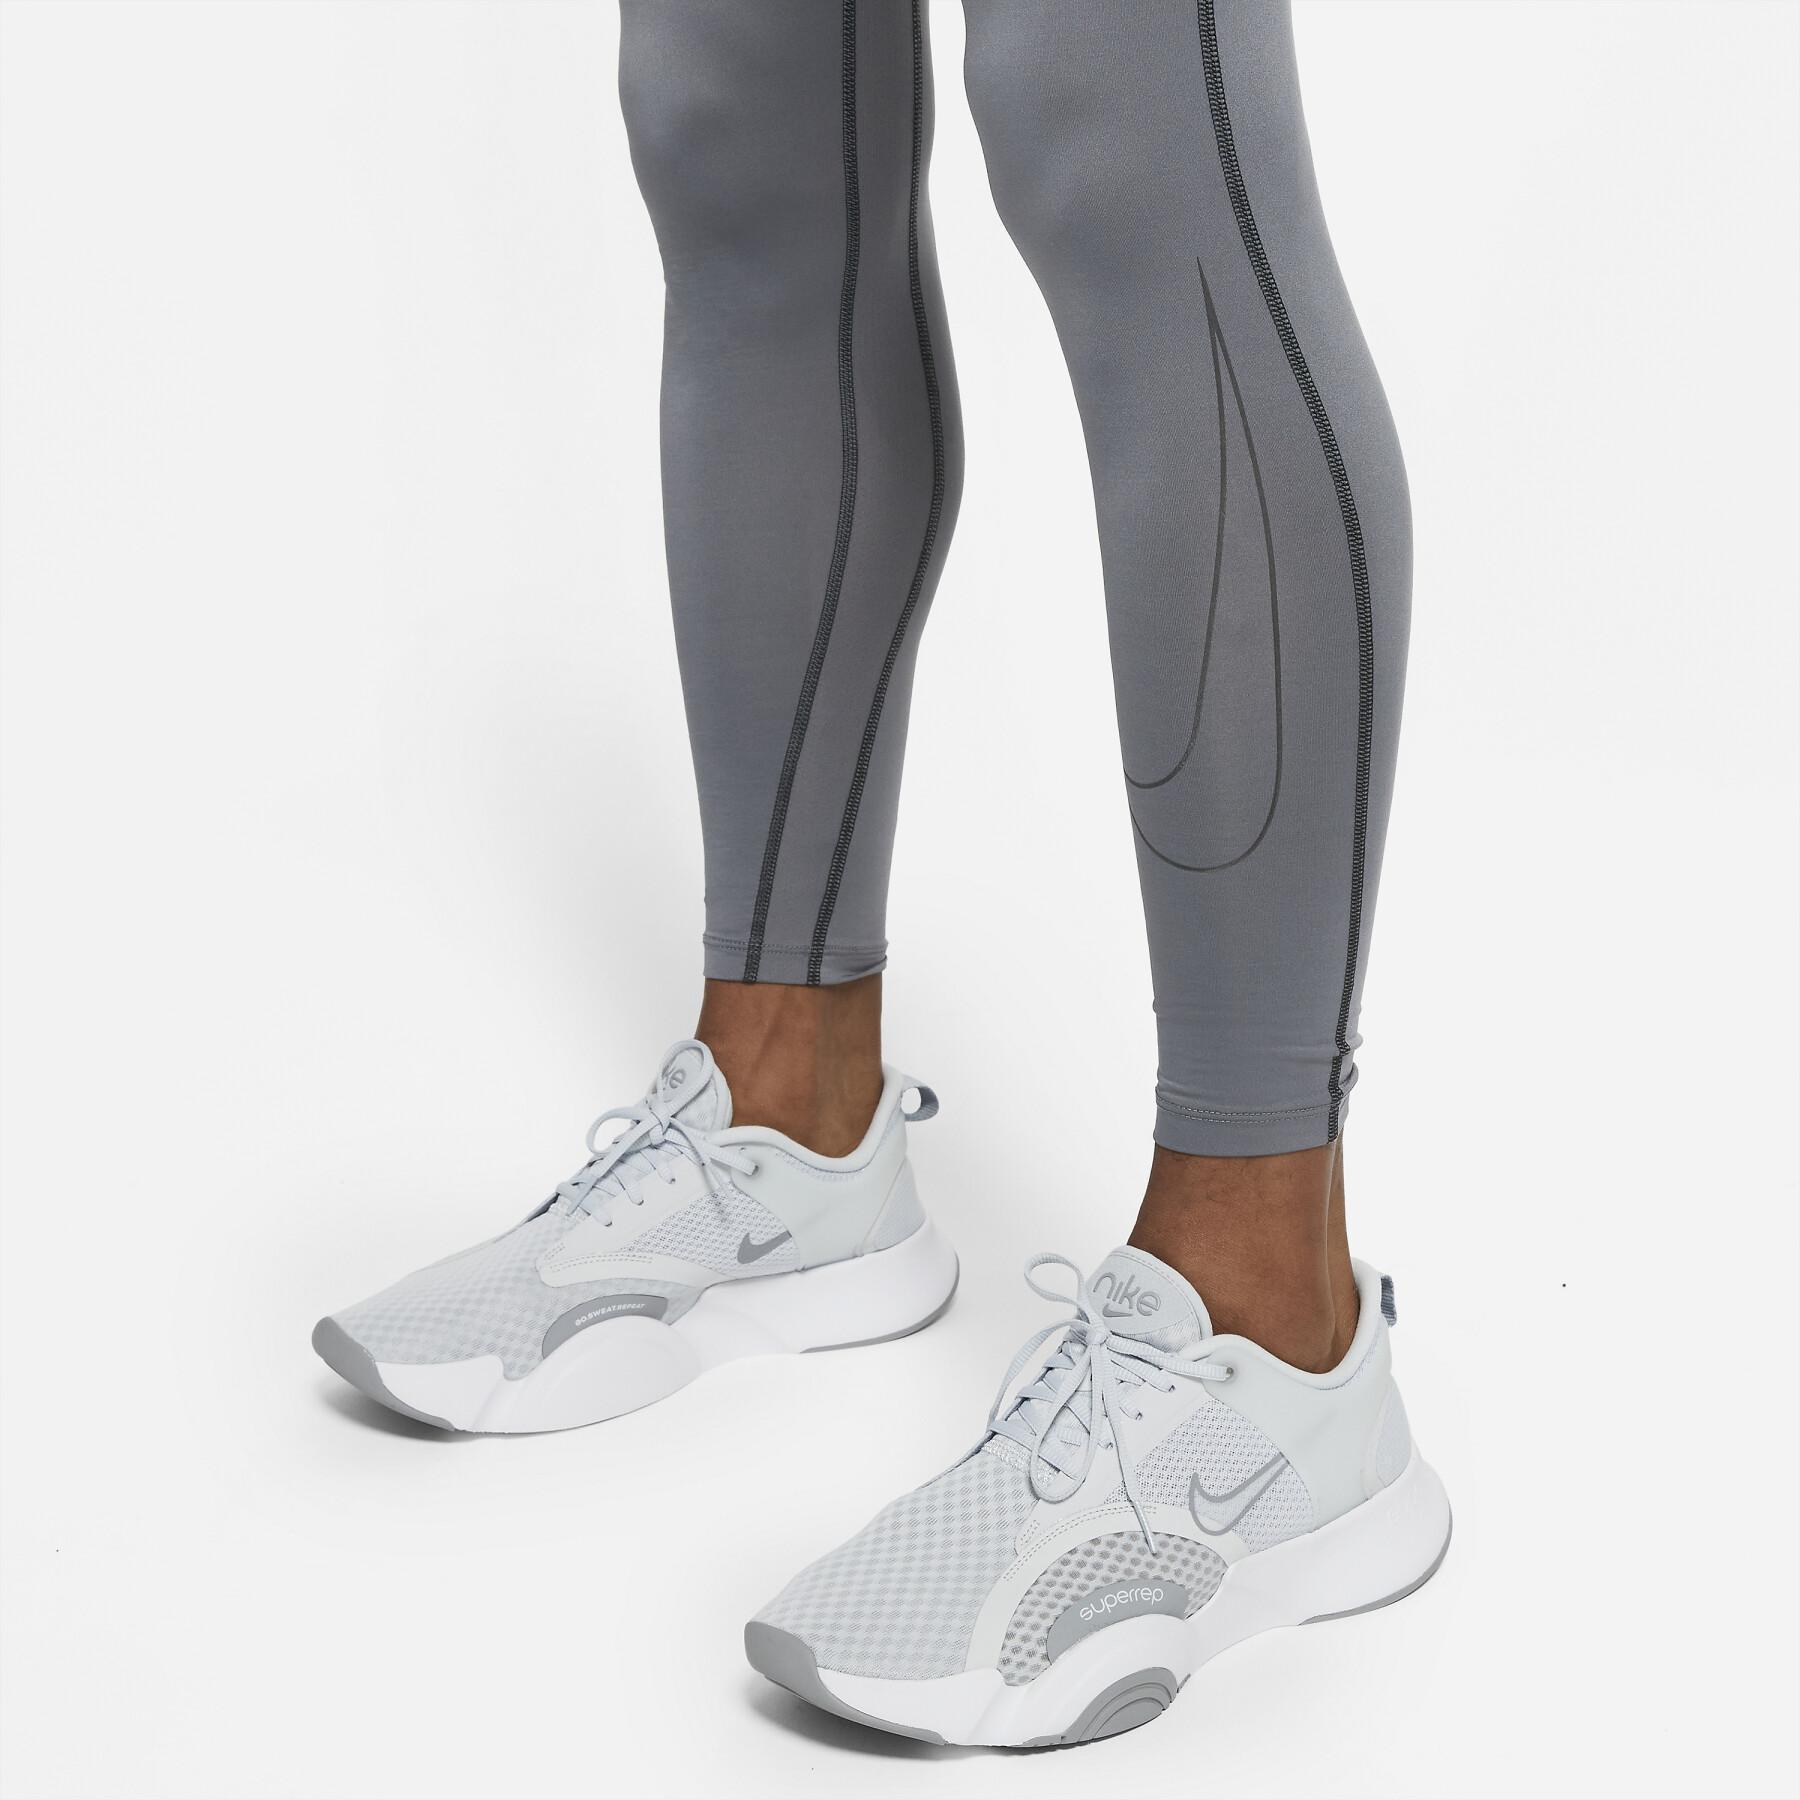 Legging compressione Nike Dri-Fit